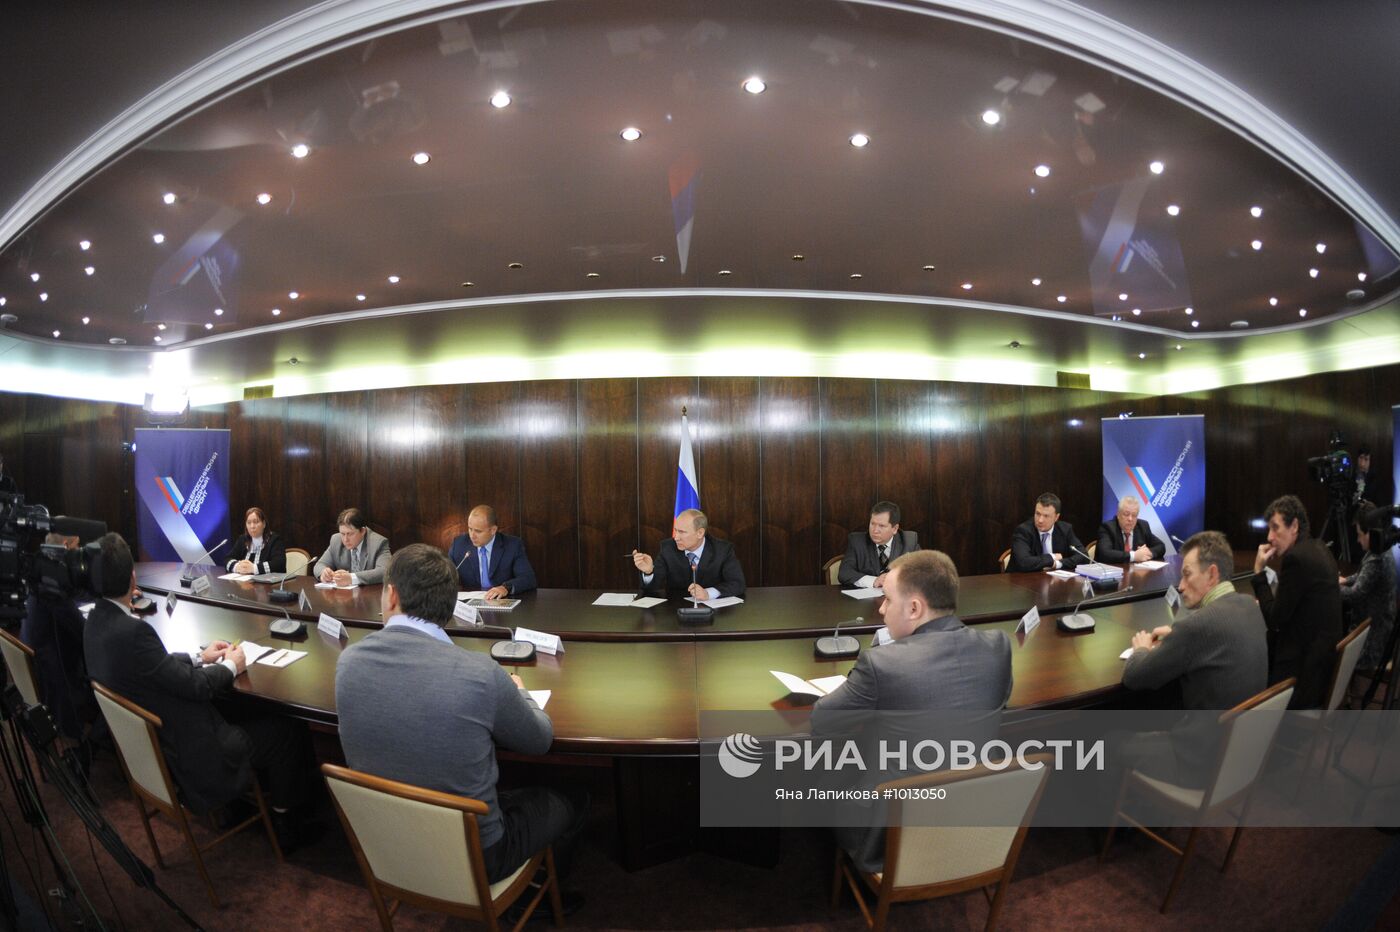 В.Путин провел встречу с представителями объединений рыболовства